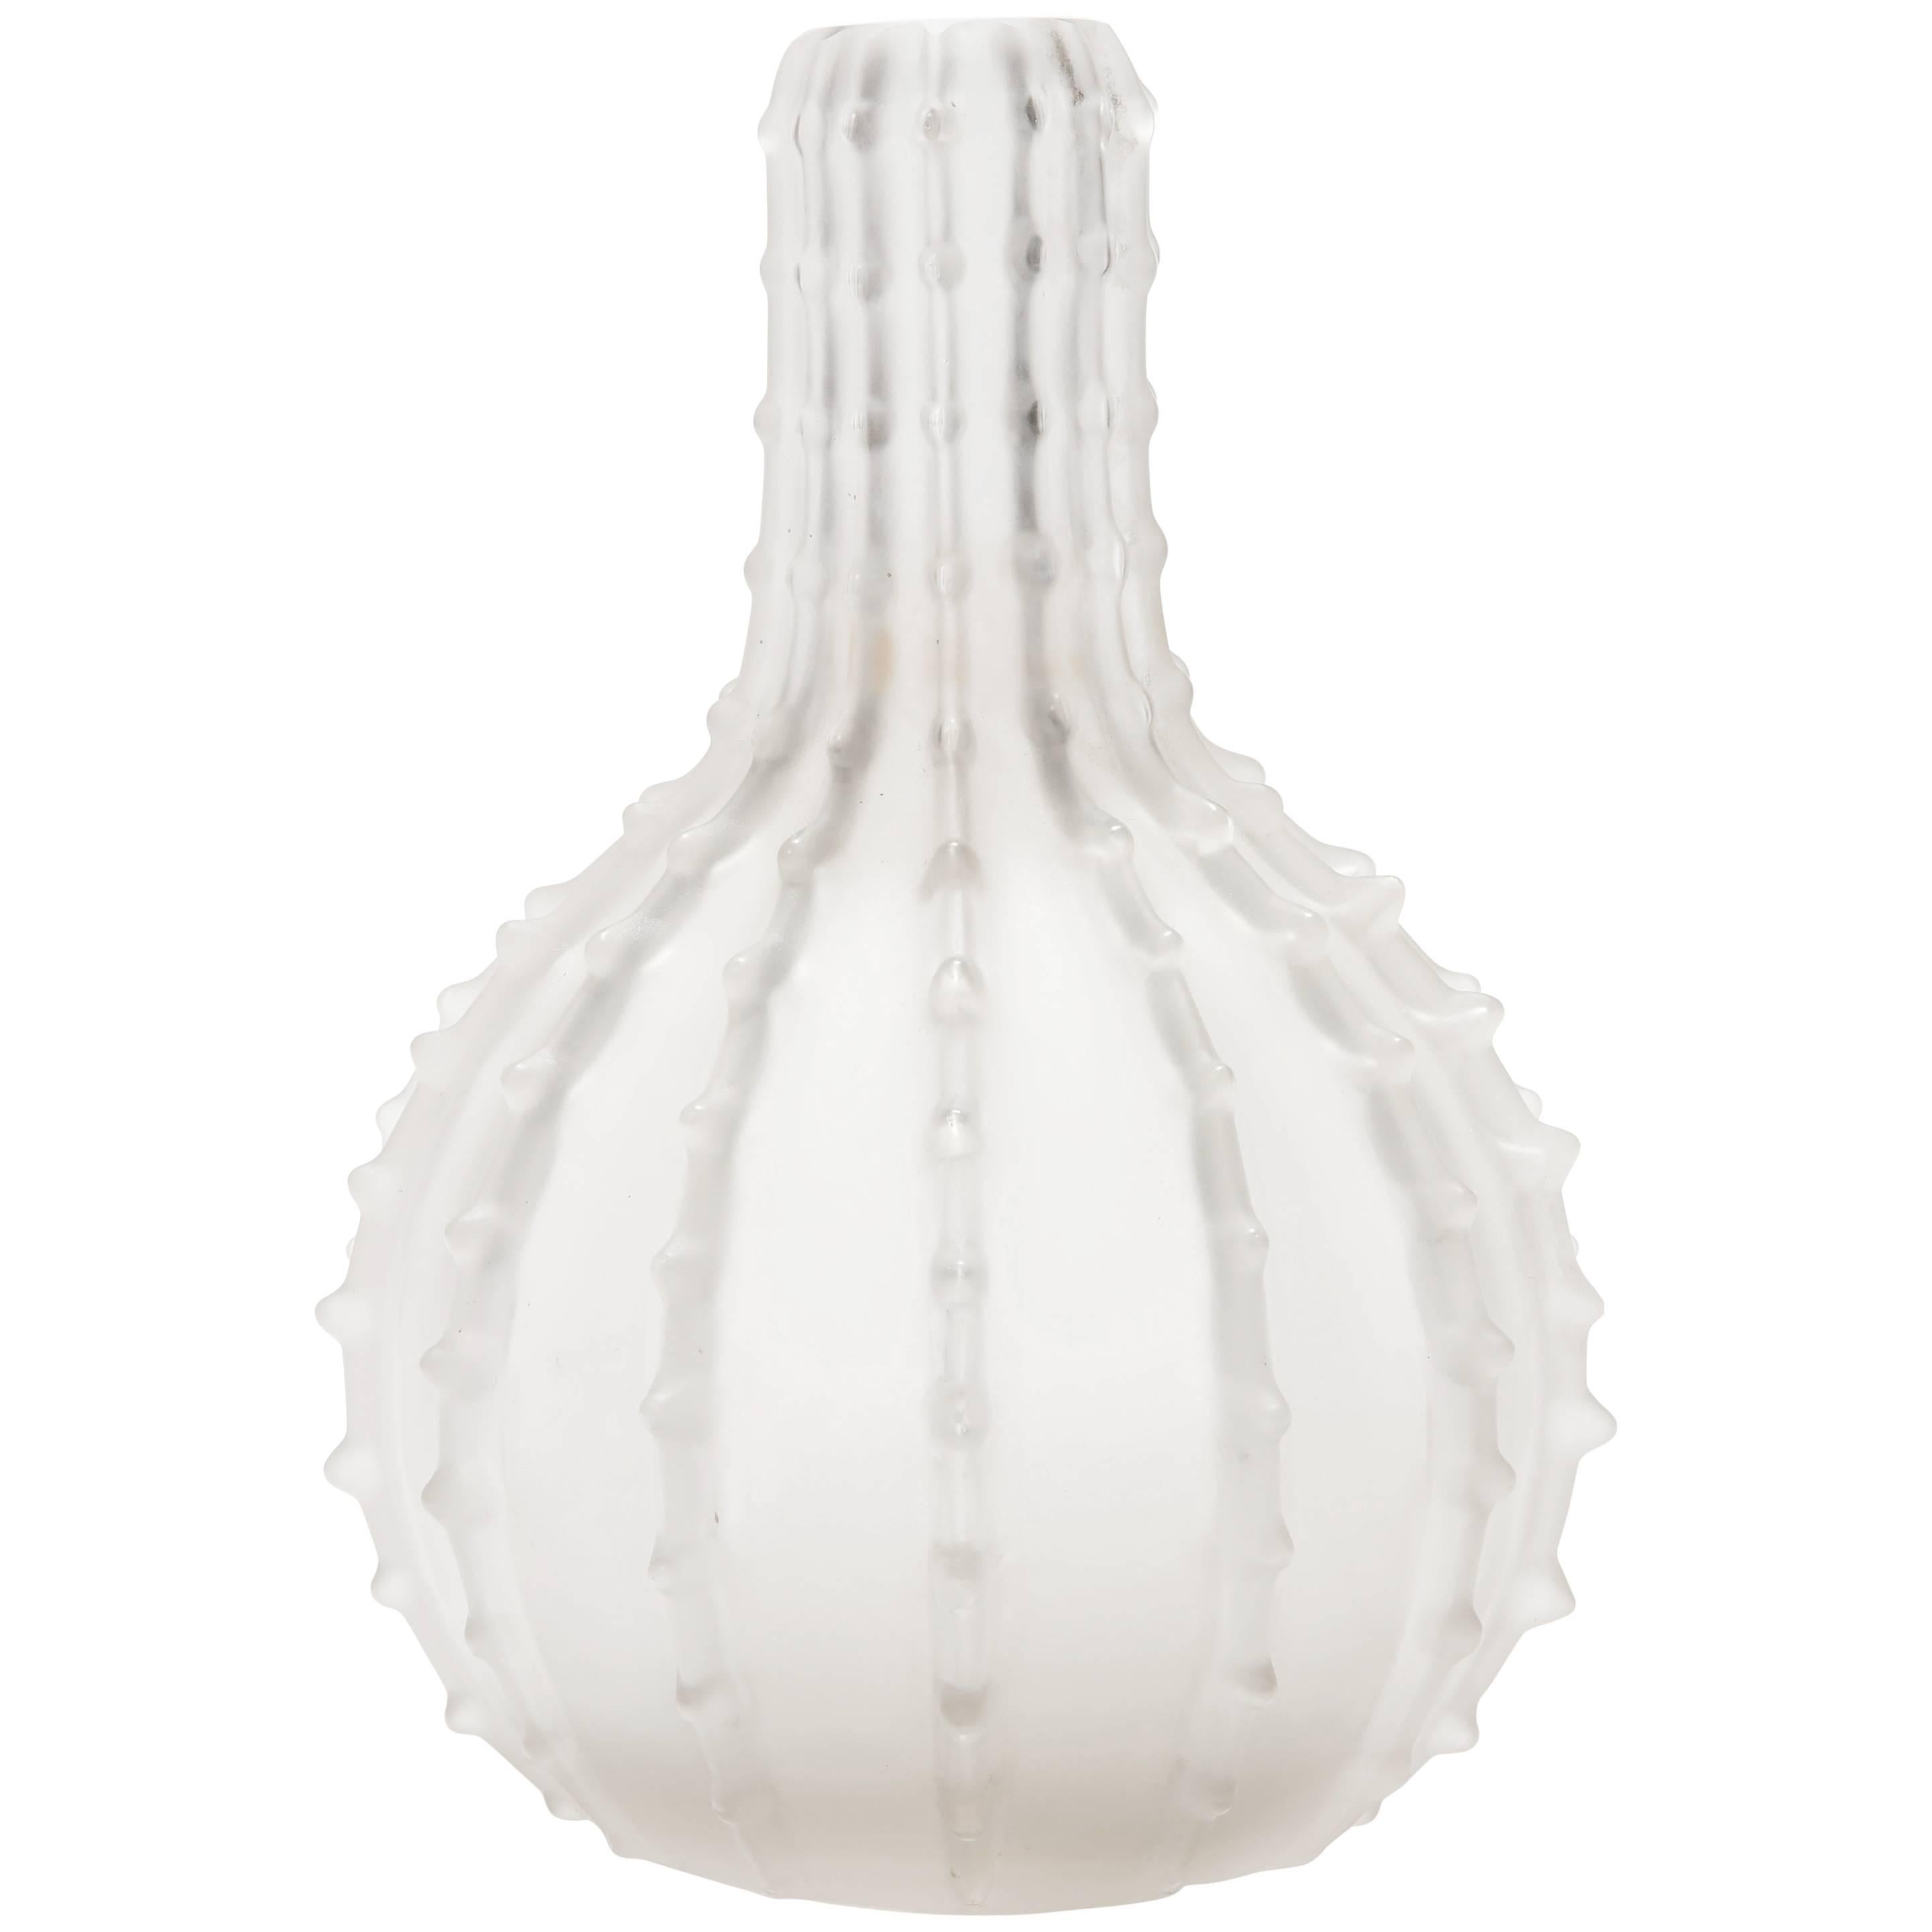 "Dentelé" Vase by René Lalique, circa 1912